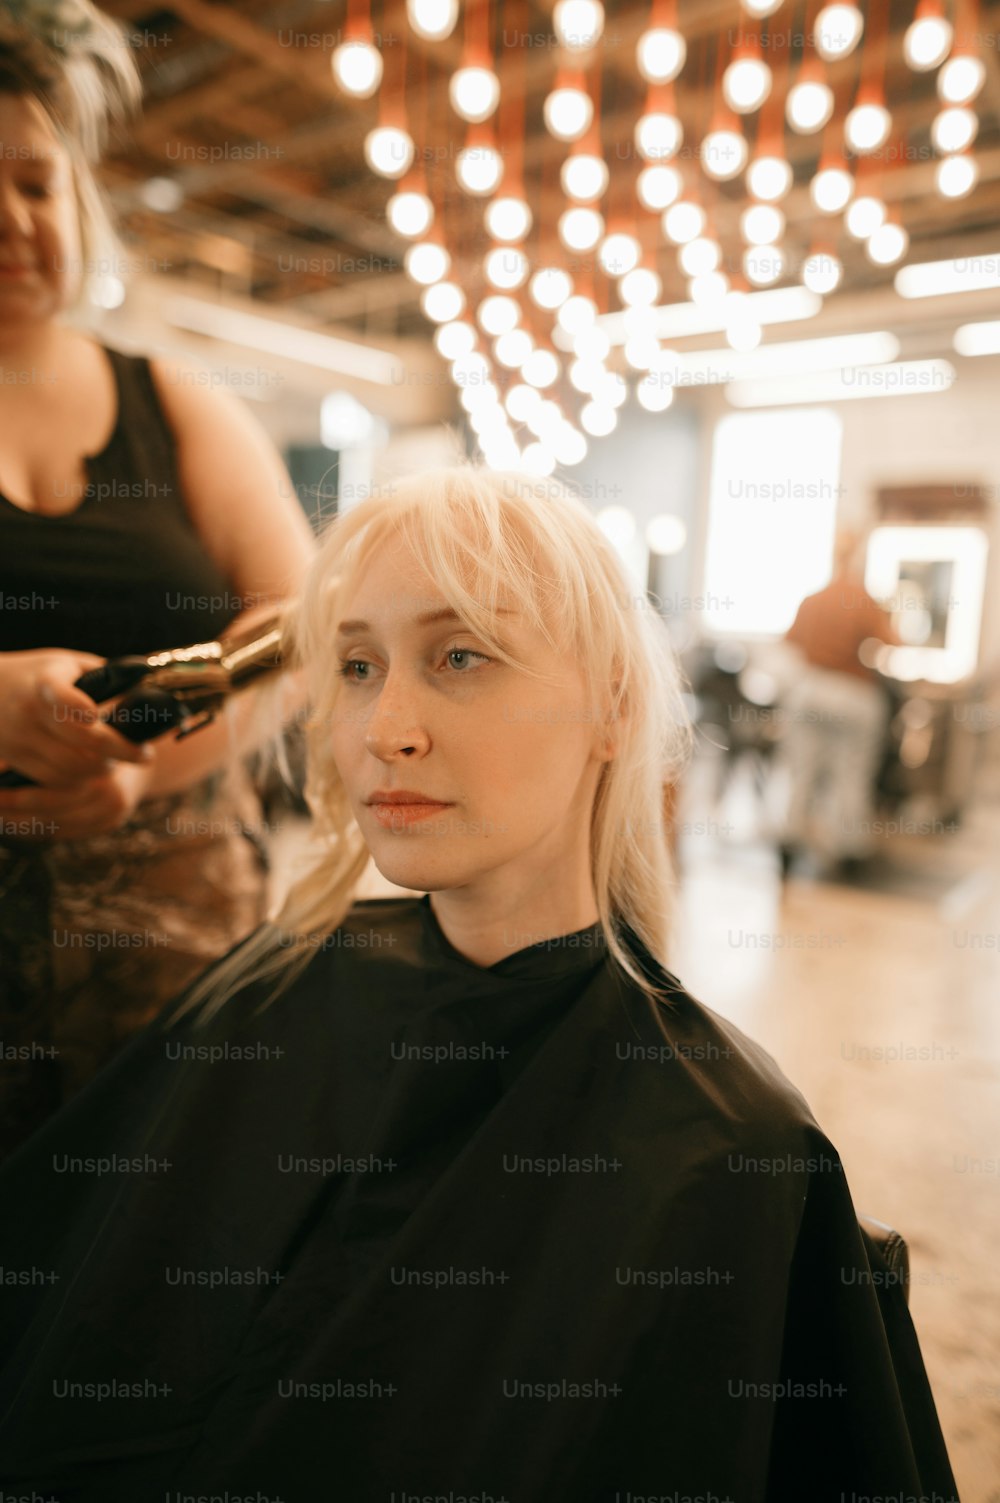 a woman getting her hair cut at a salon